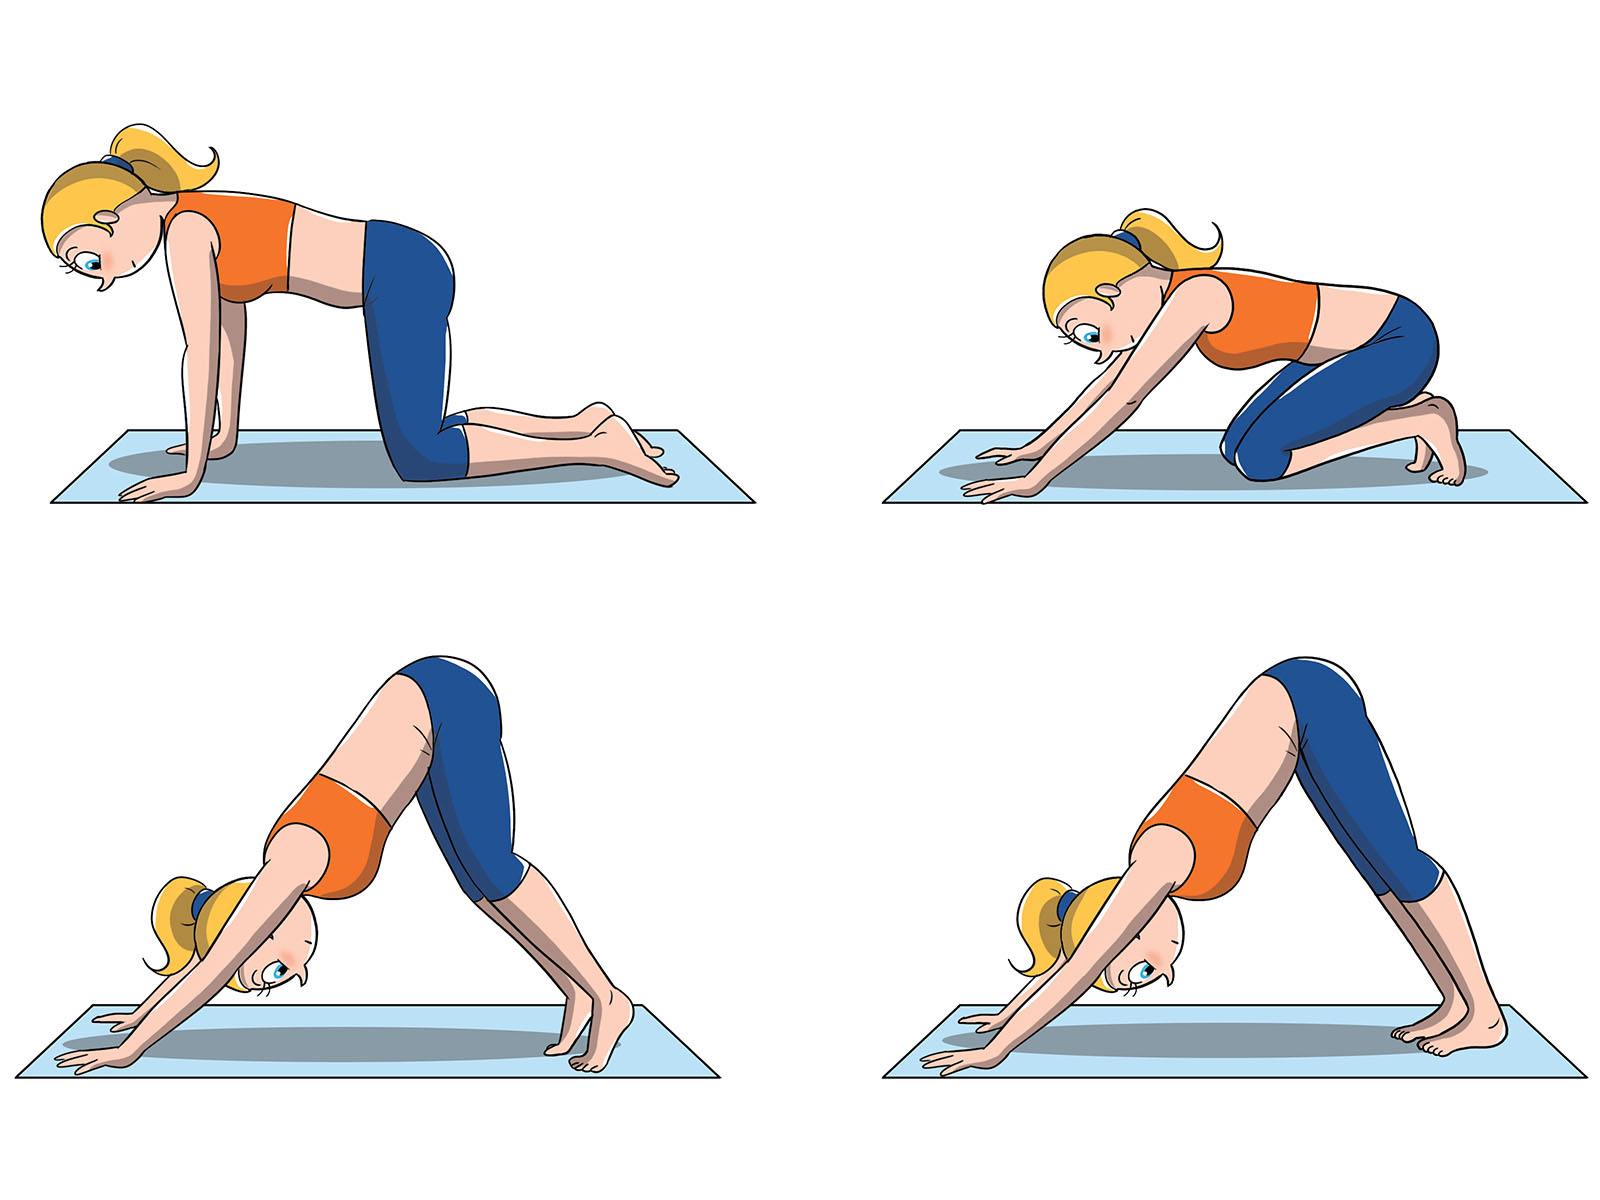 posizioni yoga livello intermedio: cane a testa in giù